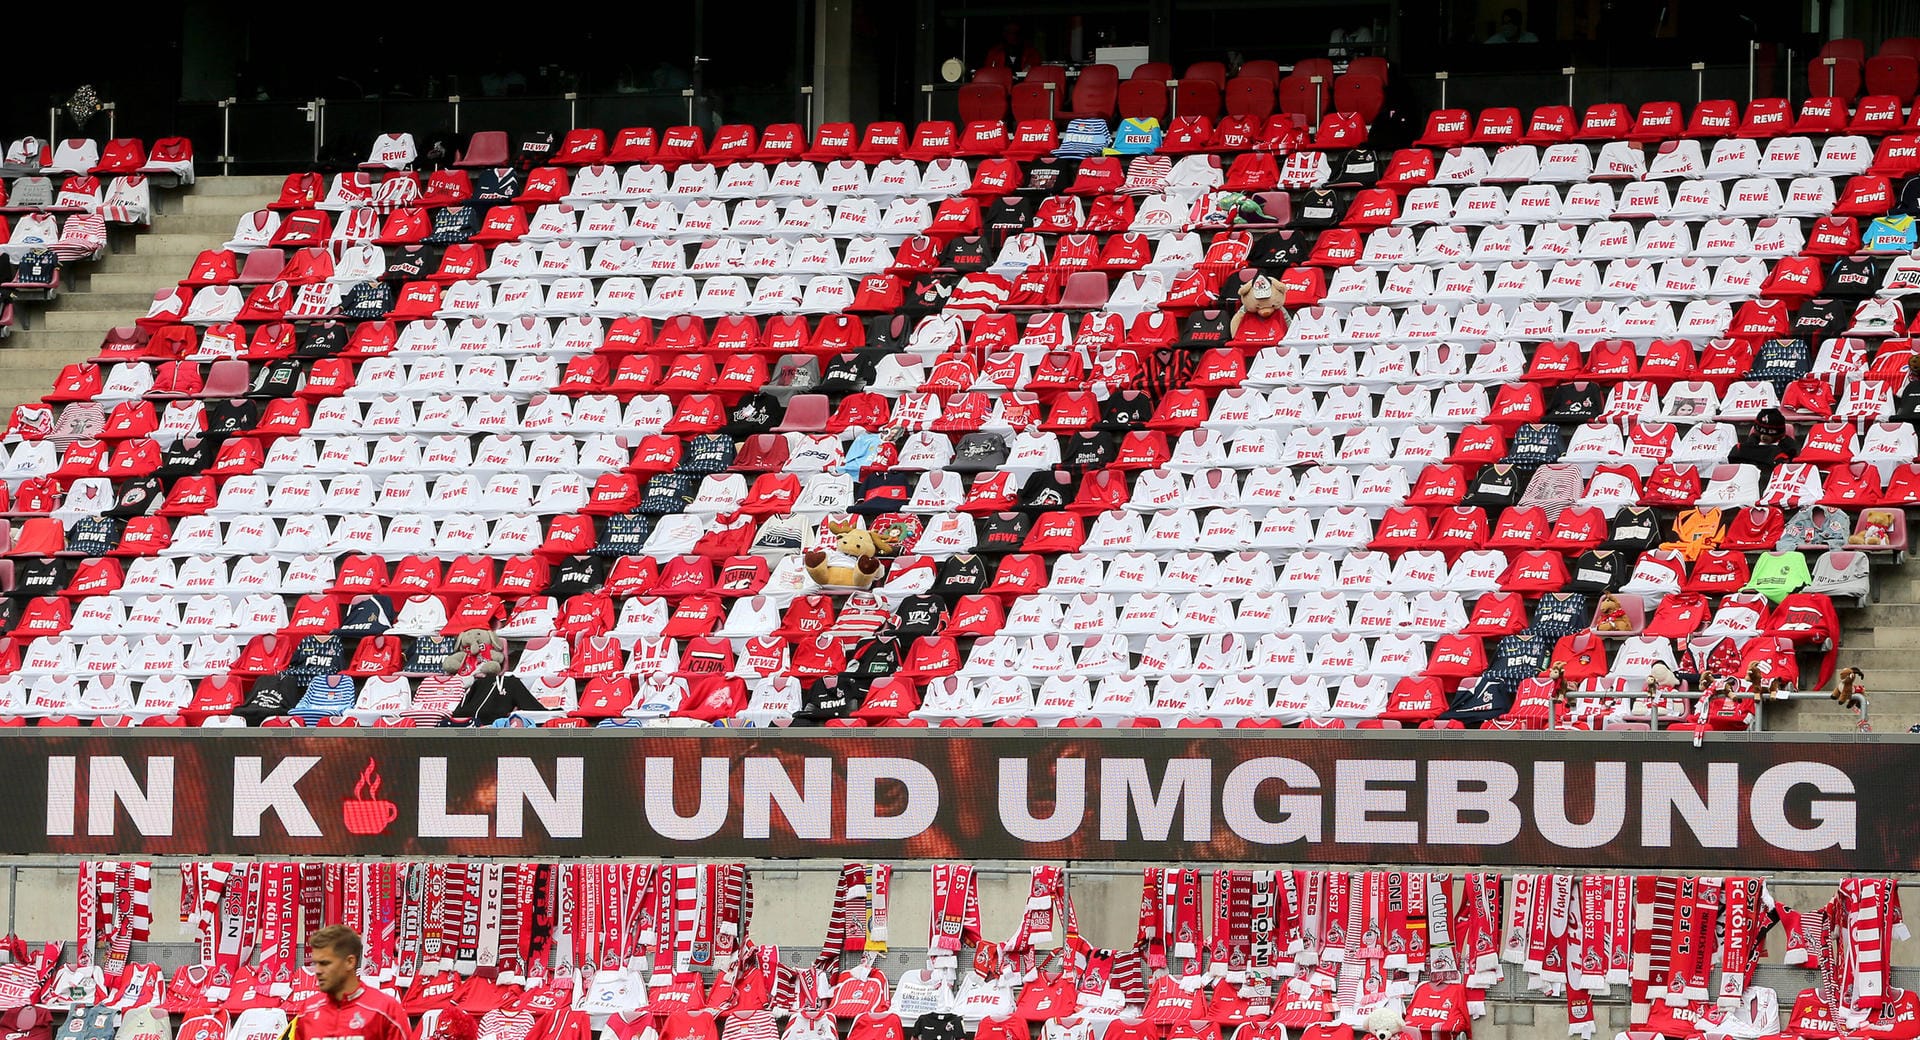 Beim rheinischen Derby gegen Fortuna Düsseldorf schmückte der 1. FC Köln seine Sitzschalen mit hunderten von Fantrikots und anderen Memorabilia. Zwar änderte dies nichts an der Stille, aber zumindest erinnerte der Blick auf die Tribünen zumindest etwas an das vollbesetzte RheinEnergieStadion.